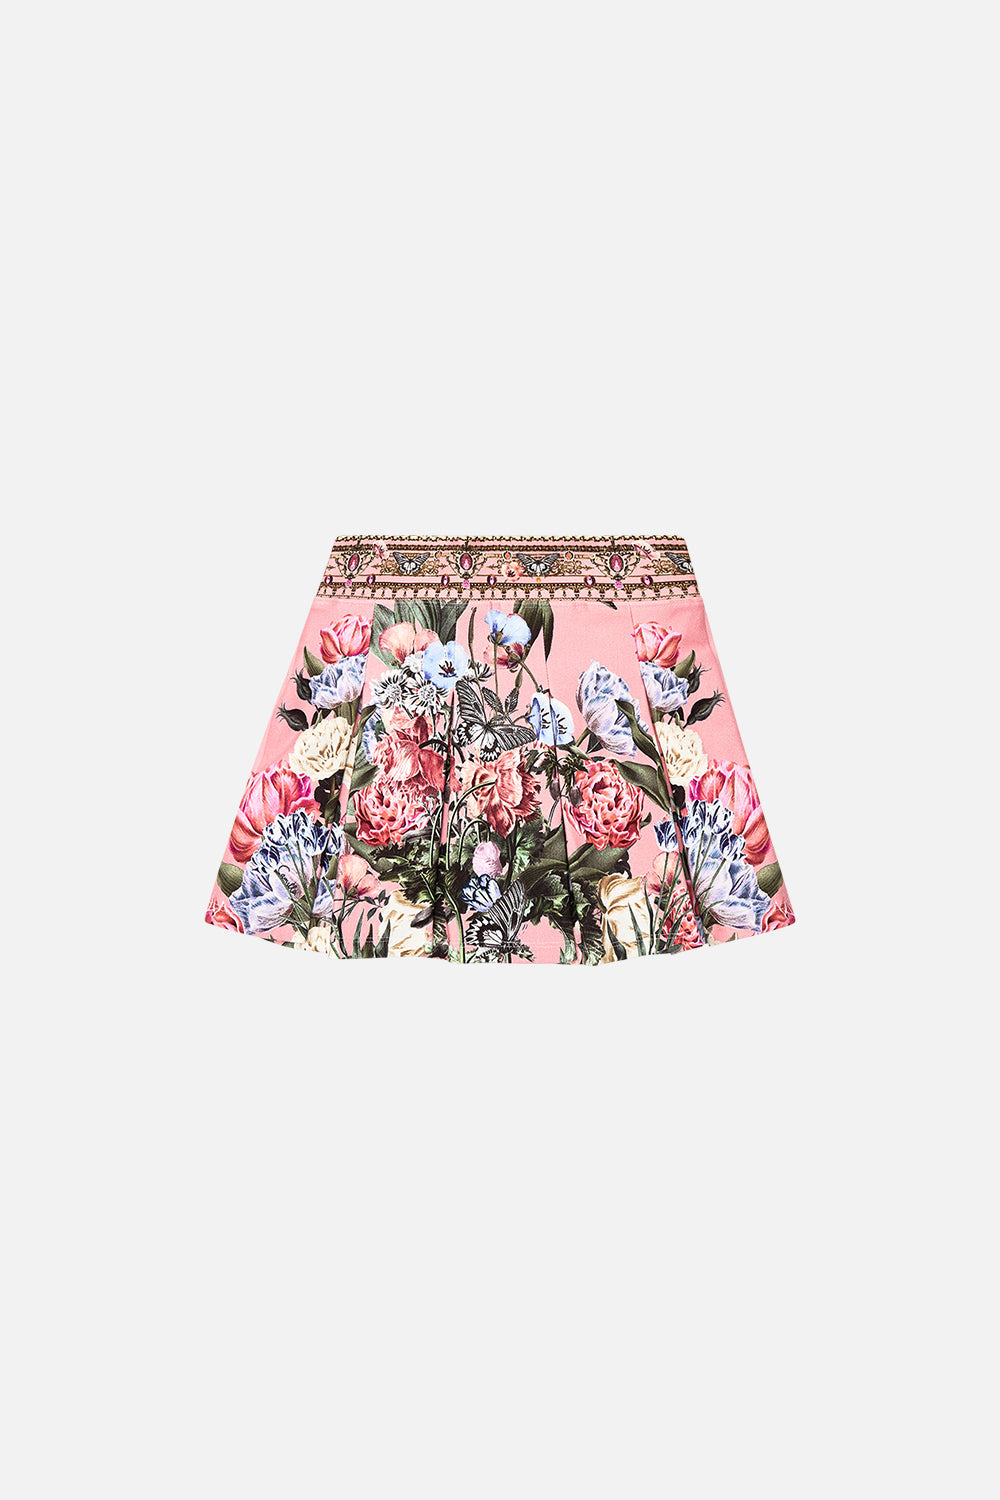 Milla by CAMILLA kids mini skirt in Woodblock Wonder print 